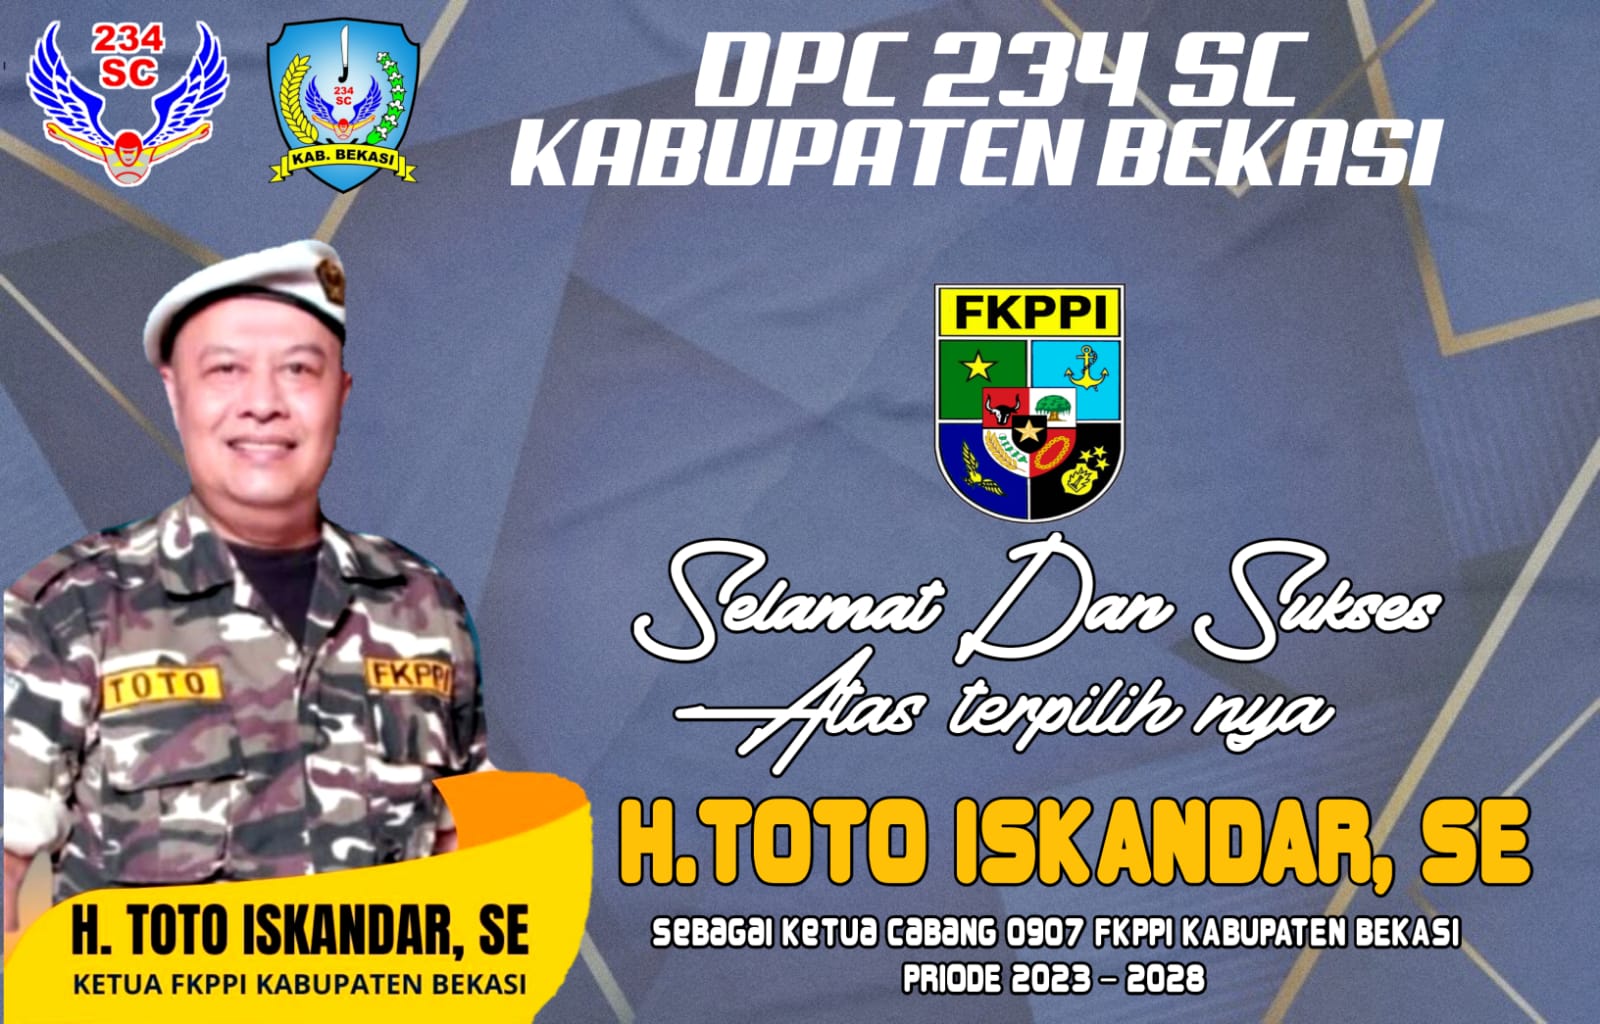 DPC 234SC Kabupaten Bekasi Mengucapkan Selamat Atas Terpilihnya H TOTO ISKANDAR SE Sebagai Ketua 0907 FKPPI Kabupaten Bekasi